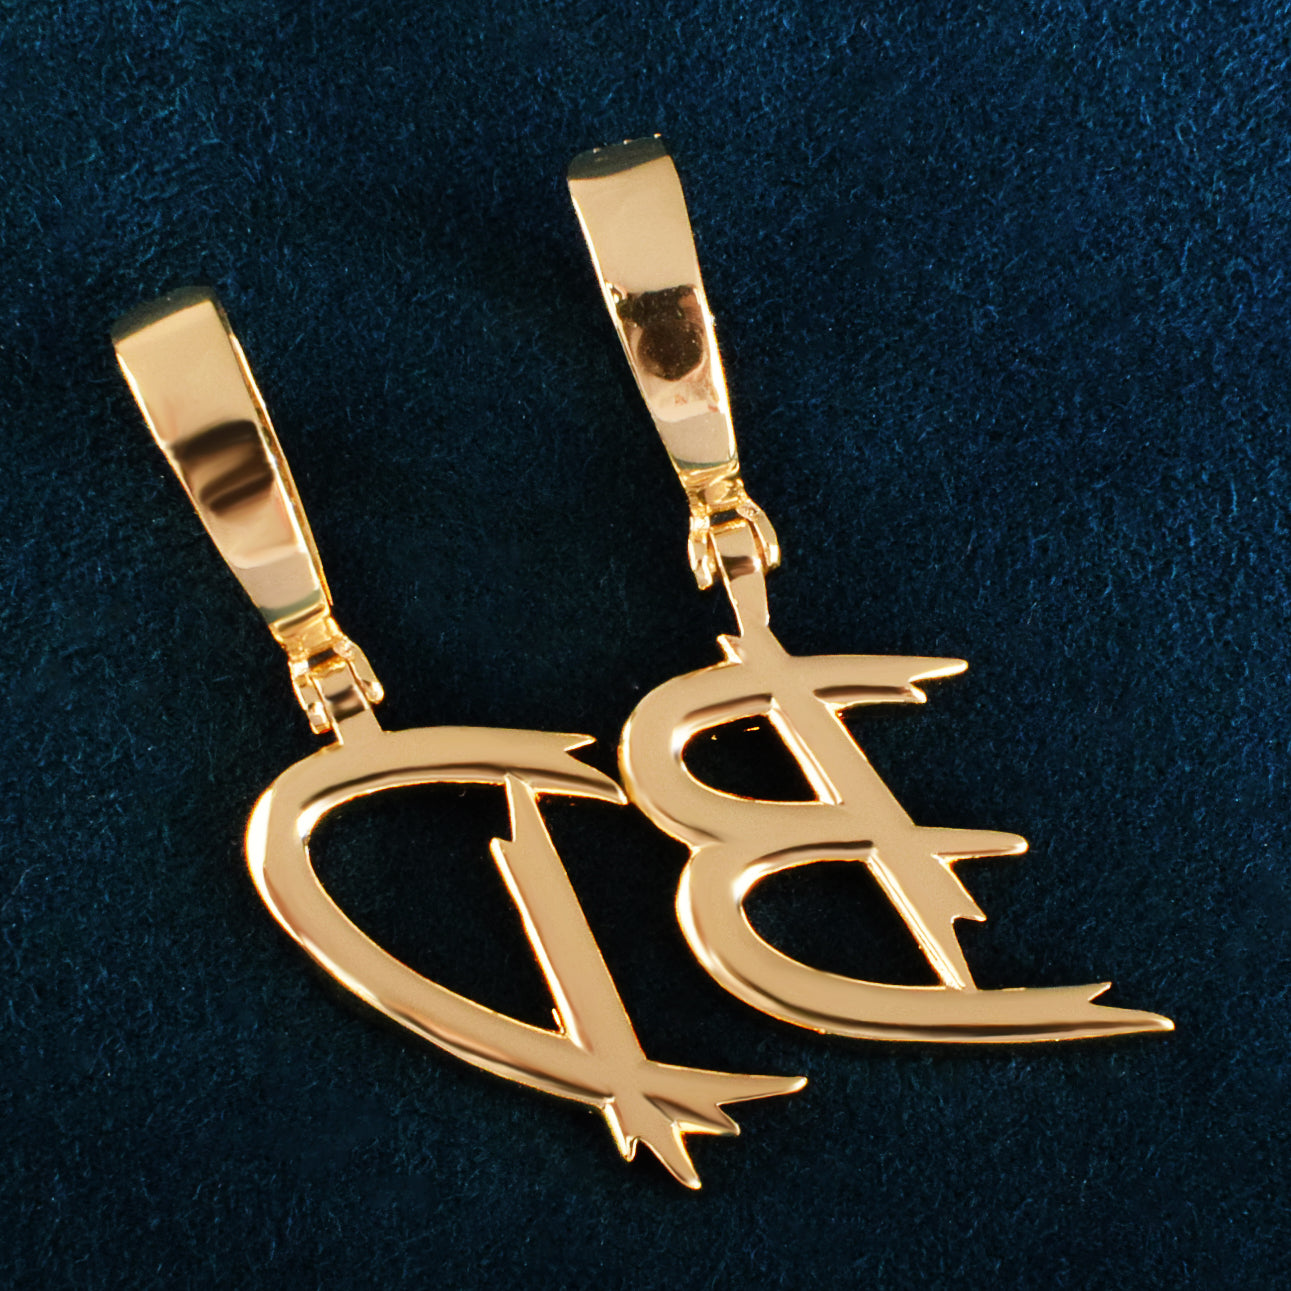 A Z Single Cursive Letter Pendant Necklace